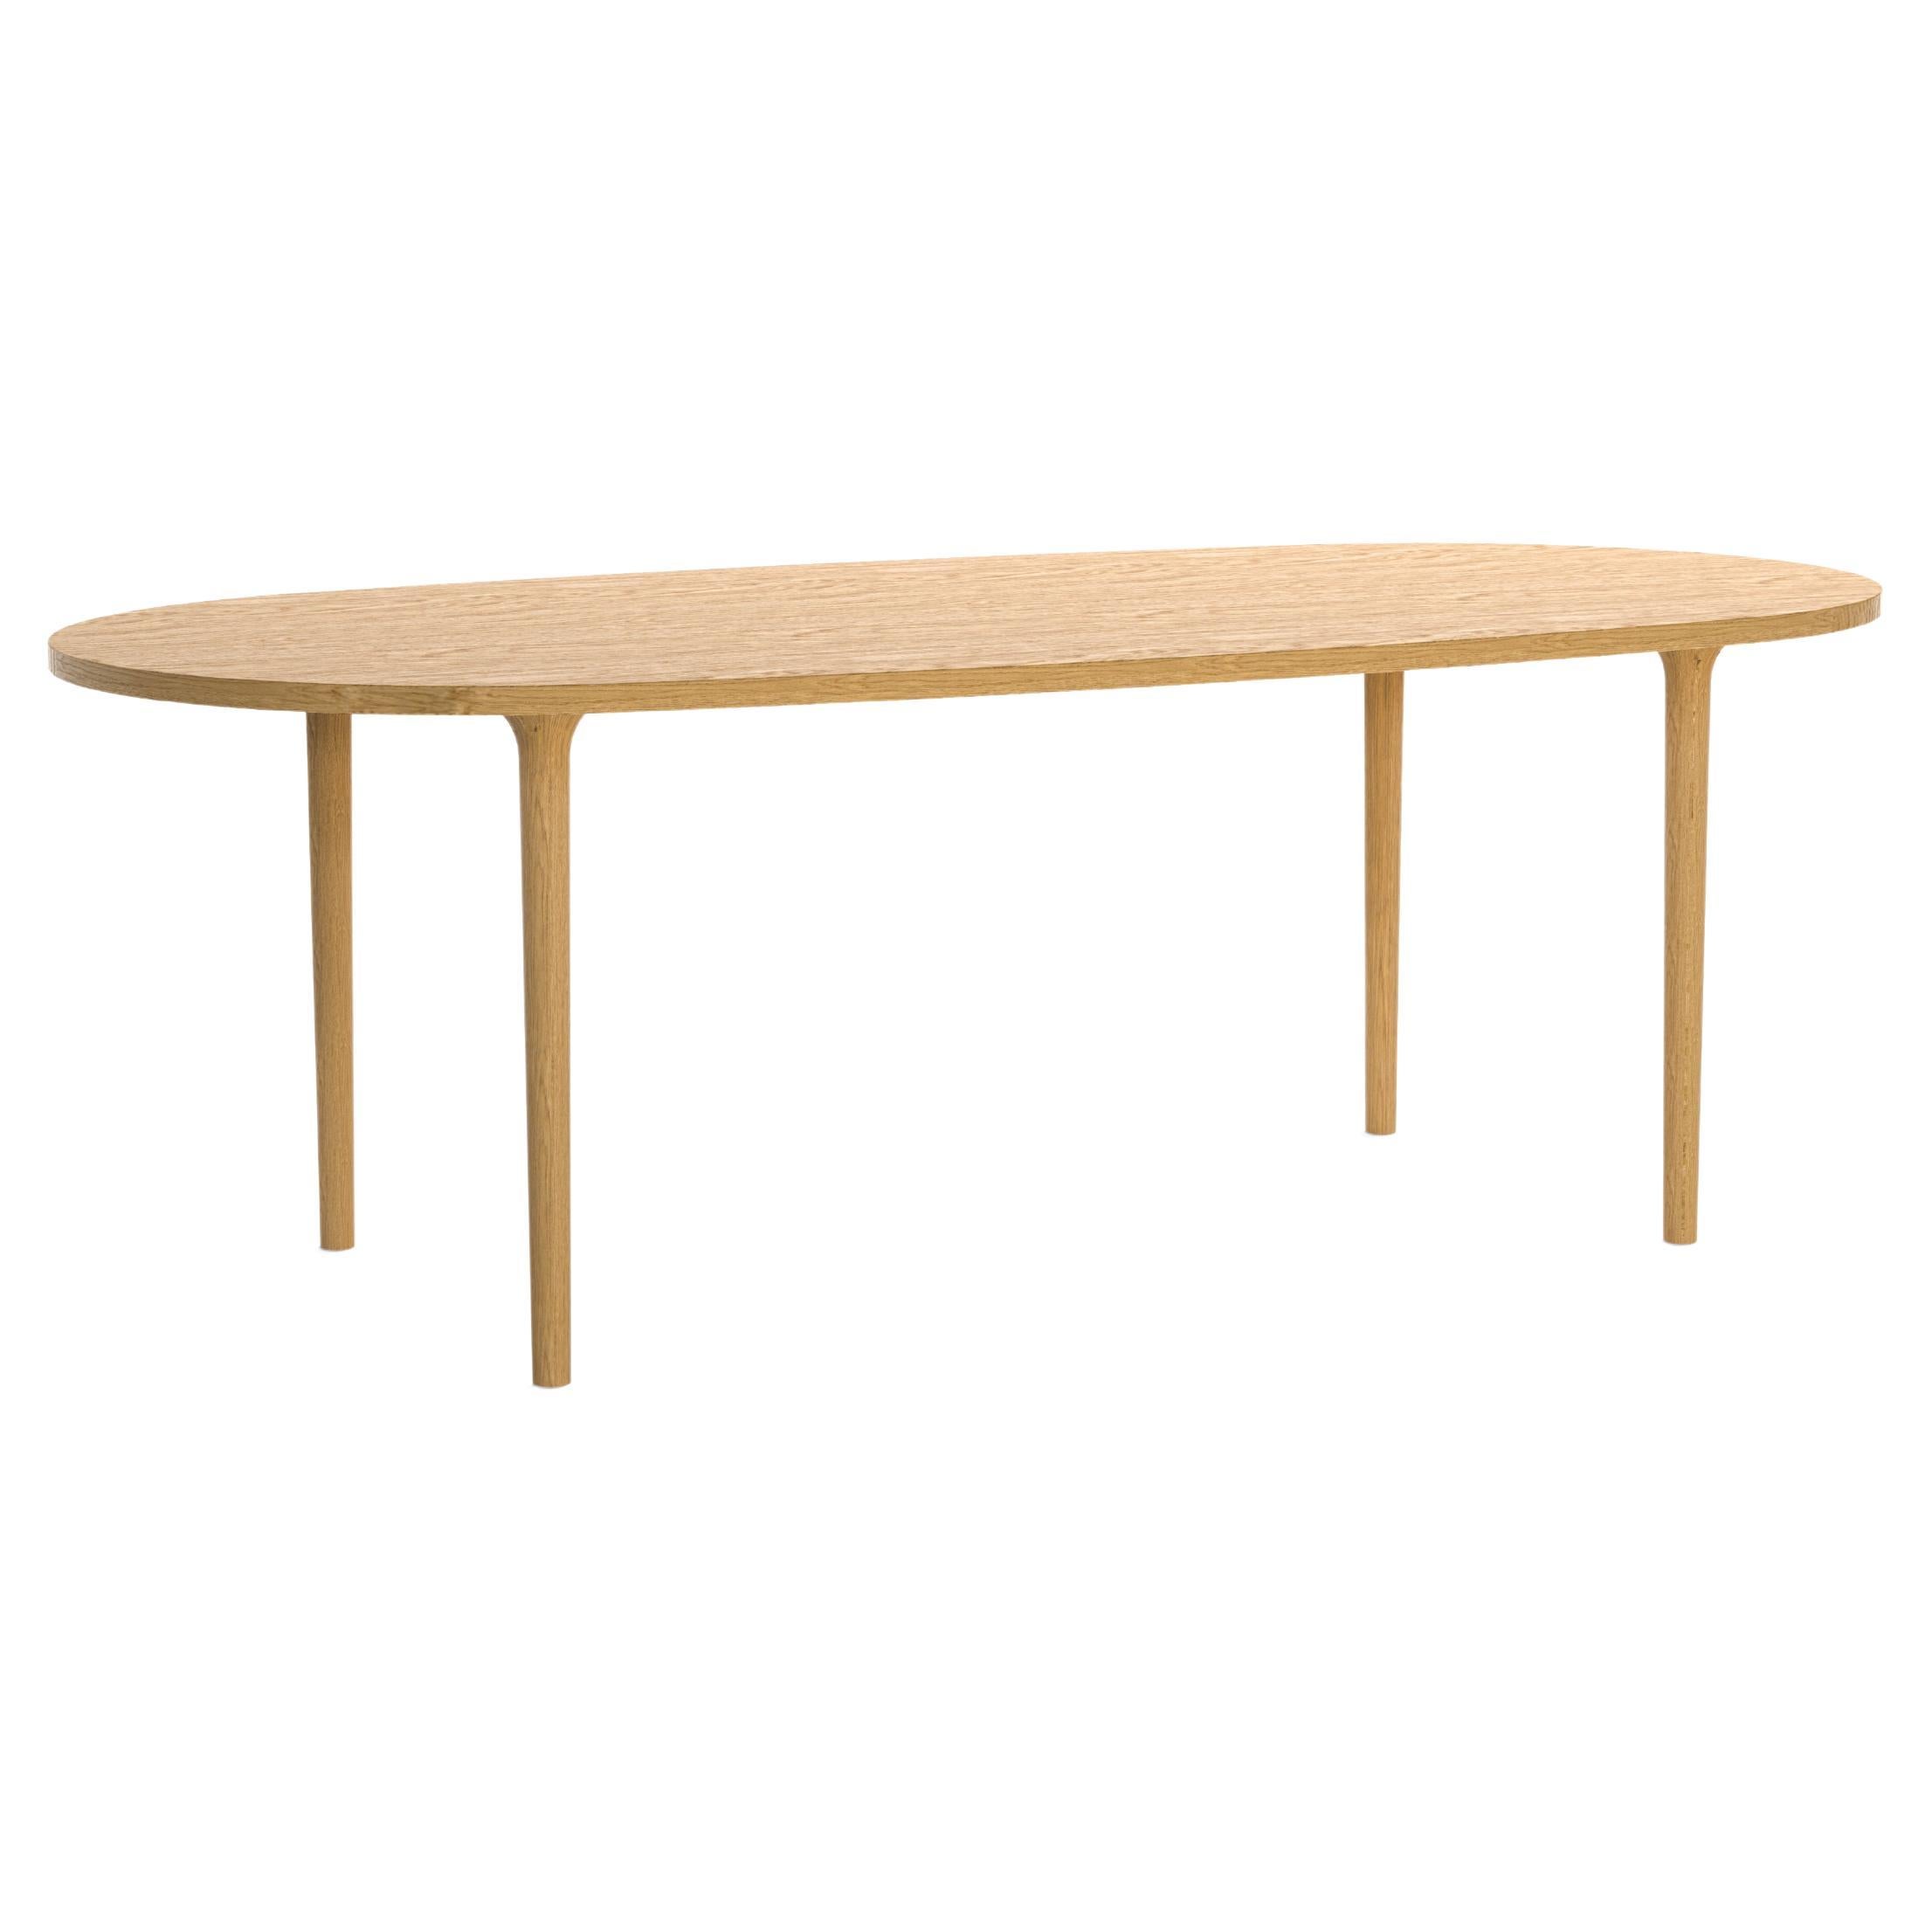 Minimalist Modern Table in oak wood Oval For Sale